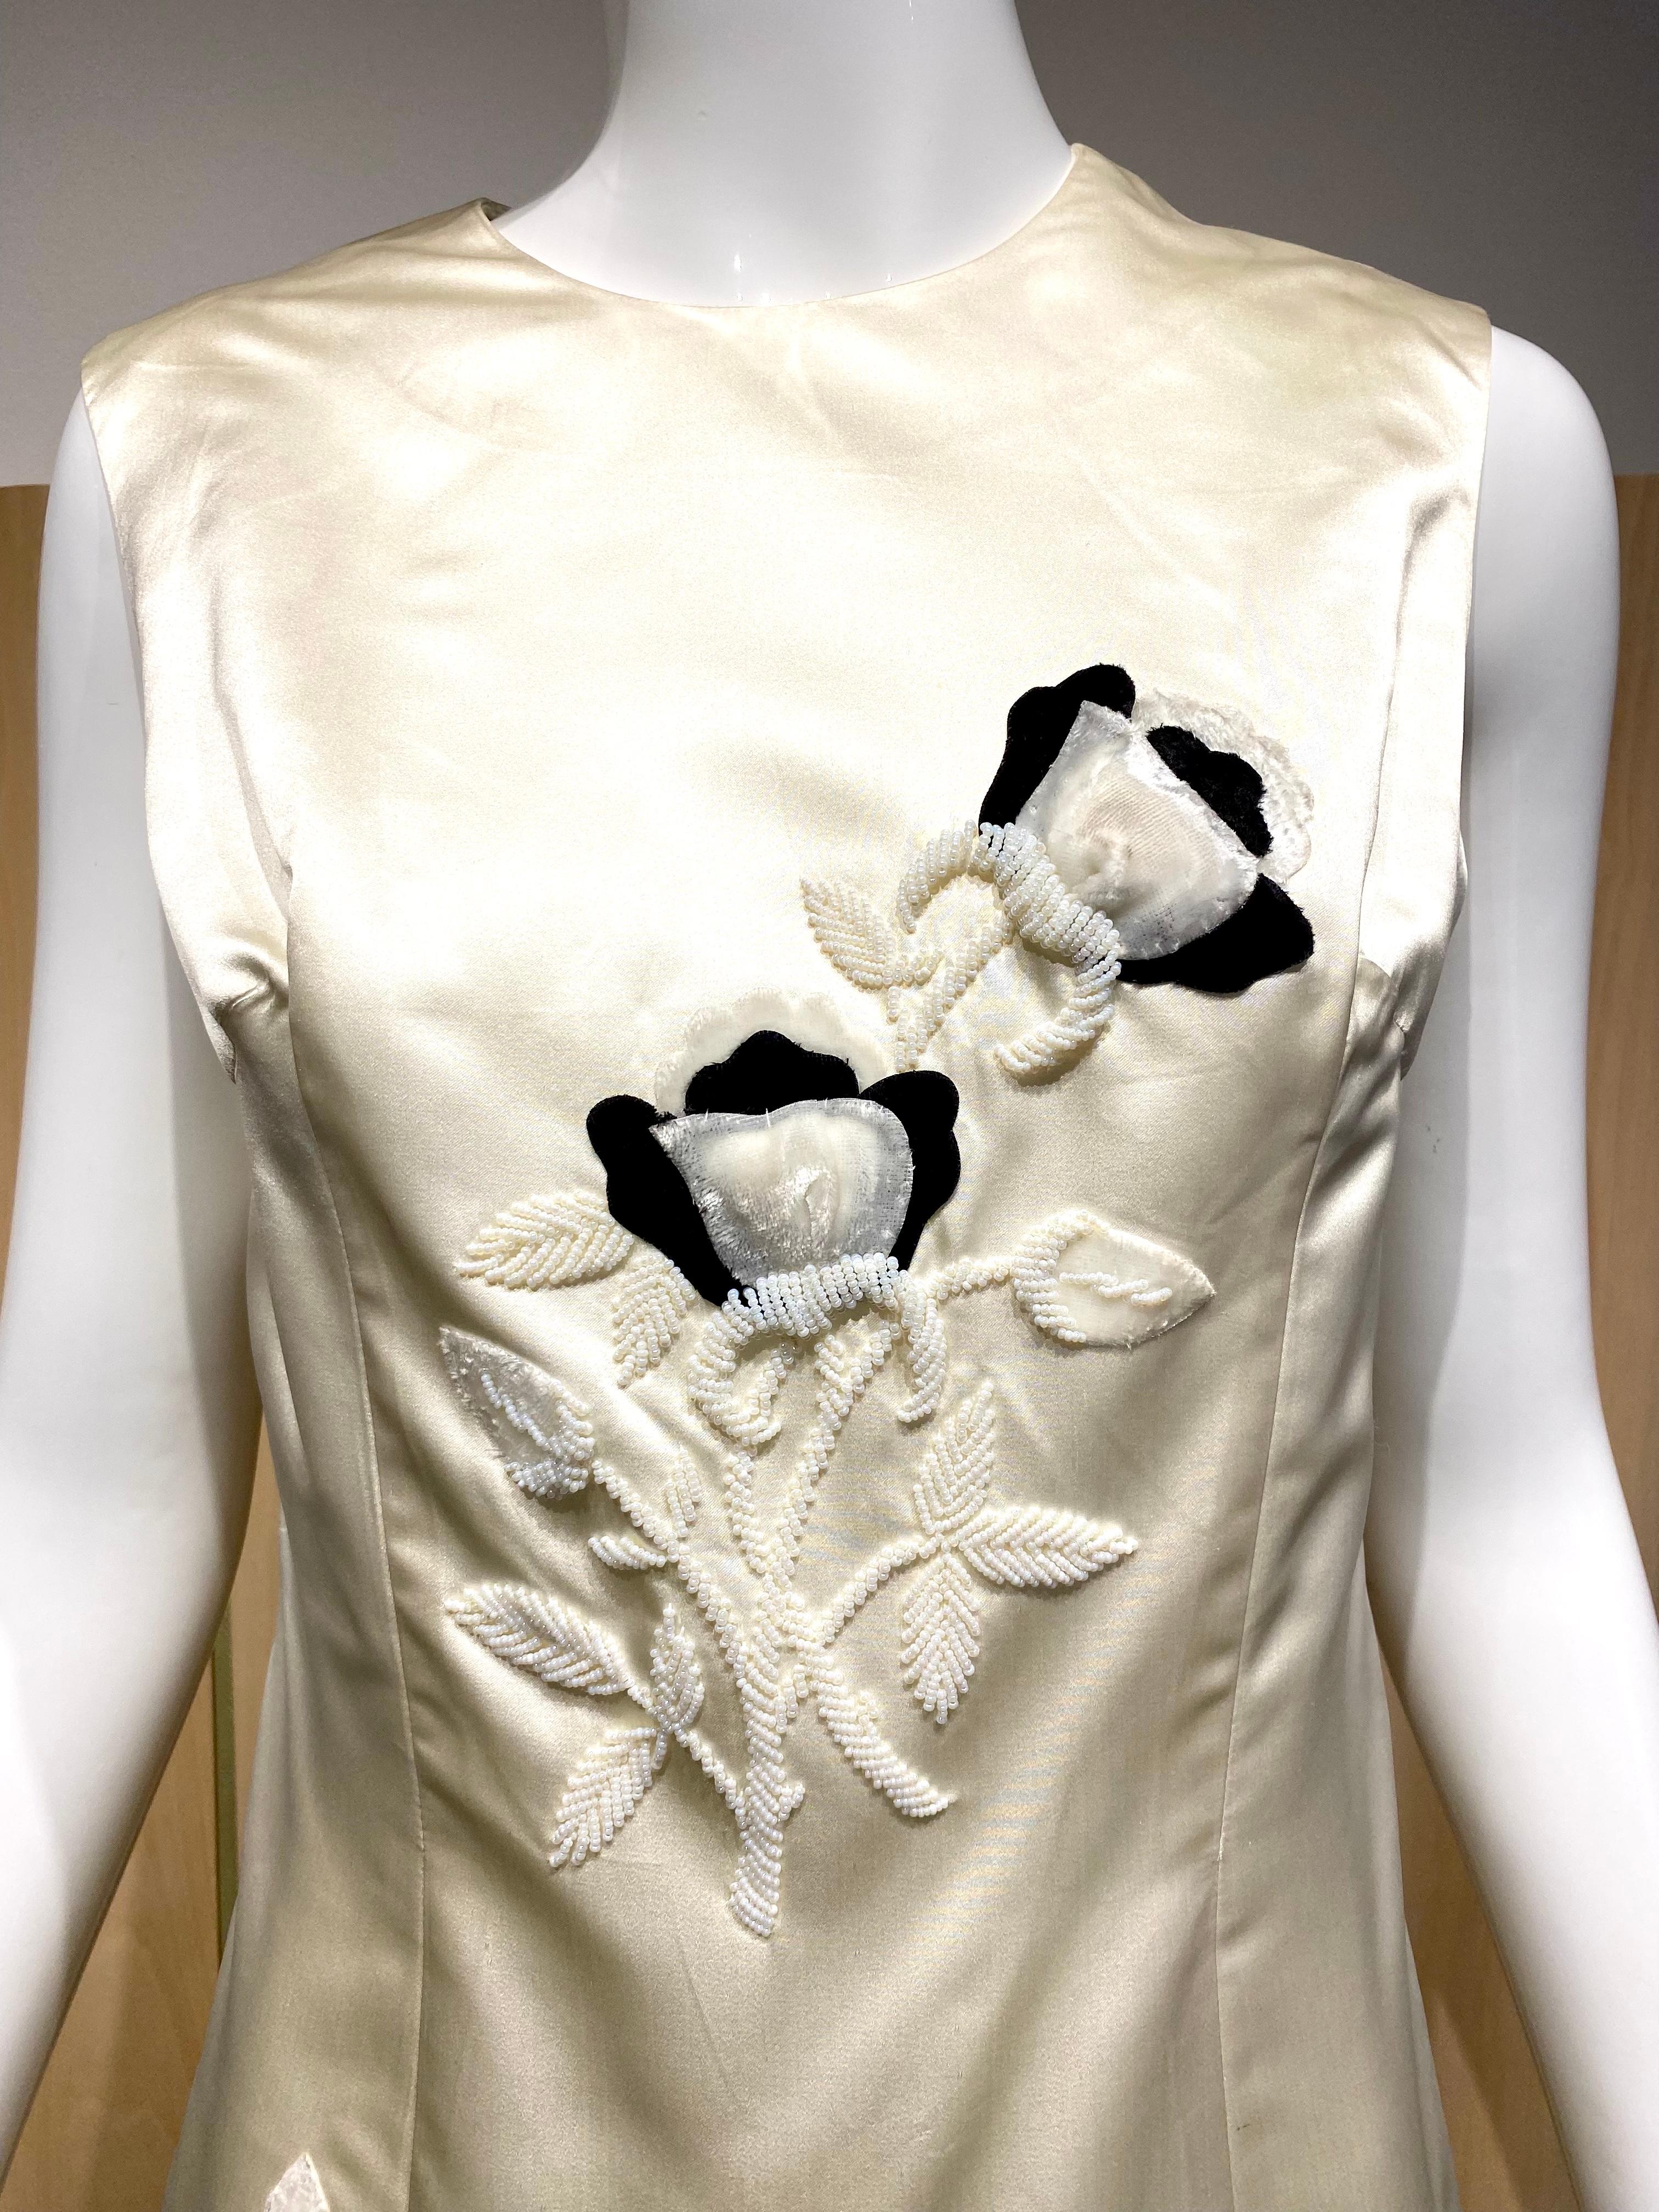 1960er Jahre Jackie O Creme Duchesse Satin Seide ärmelloses Kleid bestickt mit schwarzem Samt Blumenapplikationen und Perlen mit weißen Bügelperlen.
Perfekt für Sommer-Cocktailpartys.
Größe 6-8

Büste 36